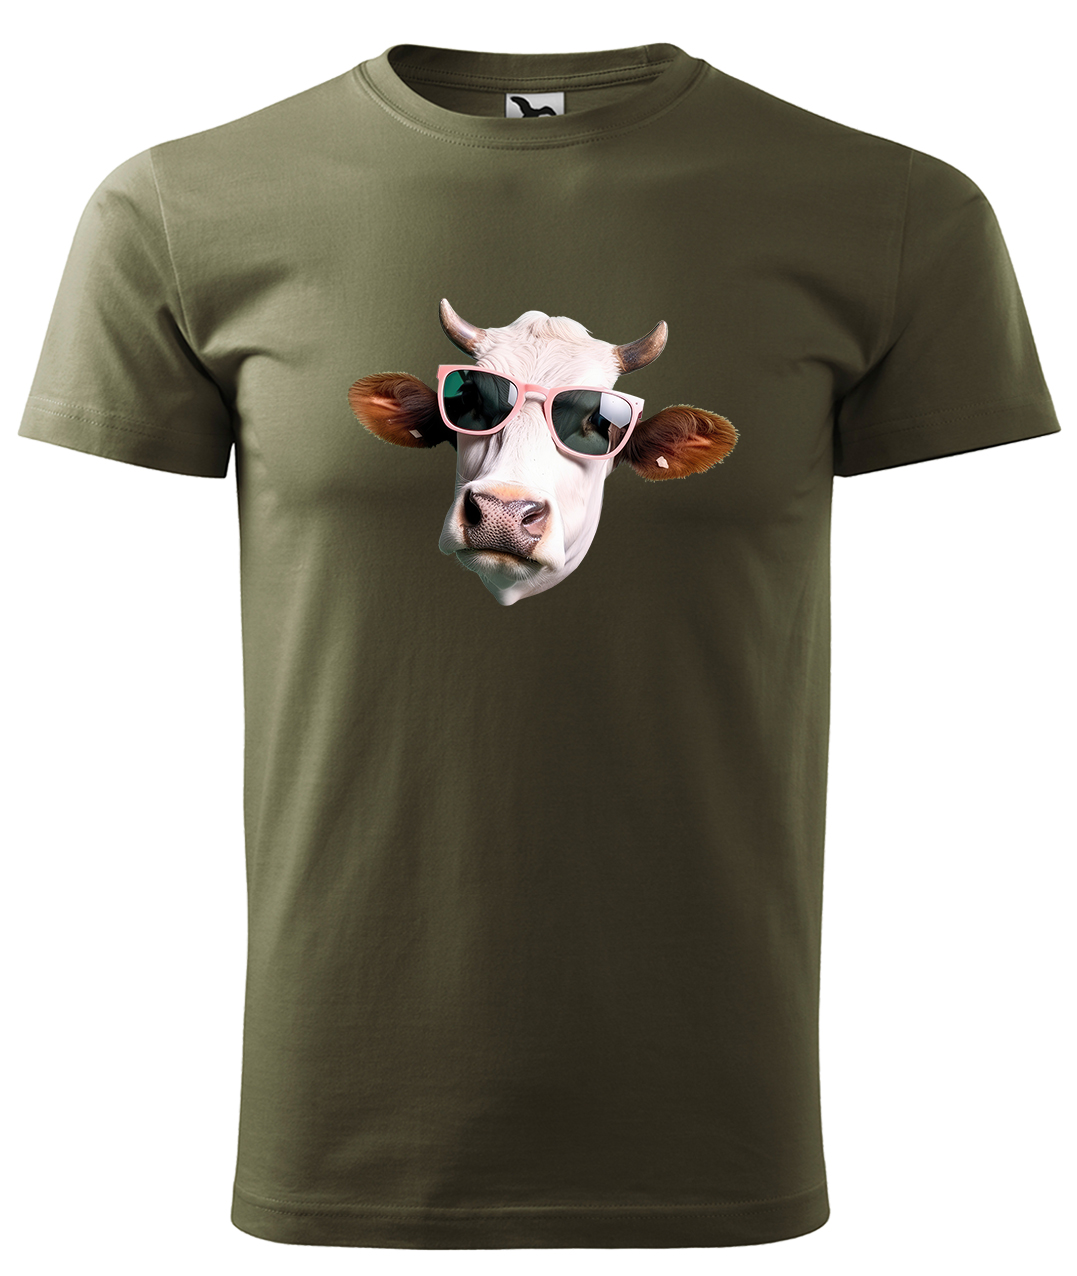 Dětské tričko s krávou - Kráva v brýlích Velikost: 10 let / 146 cm, Barva: Military (69), Délka rukávu: Krátký rukáv